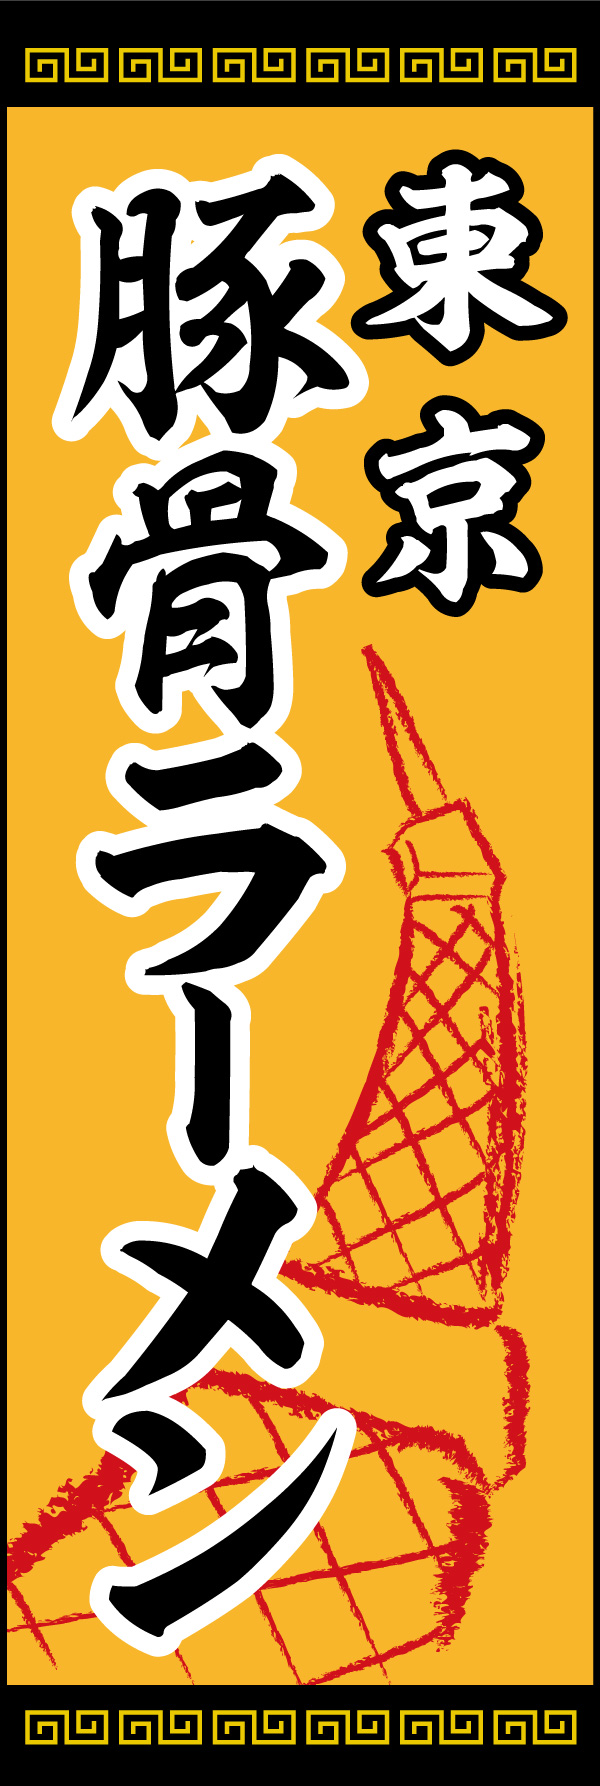 東京とんこつ 02 「東京とんこつ」ののぼりです。東京タワーのイラストをシンボルとして入れました。(Y.M)